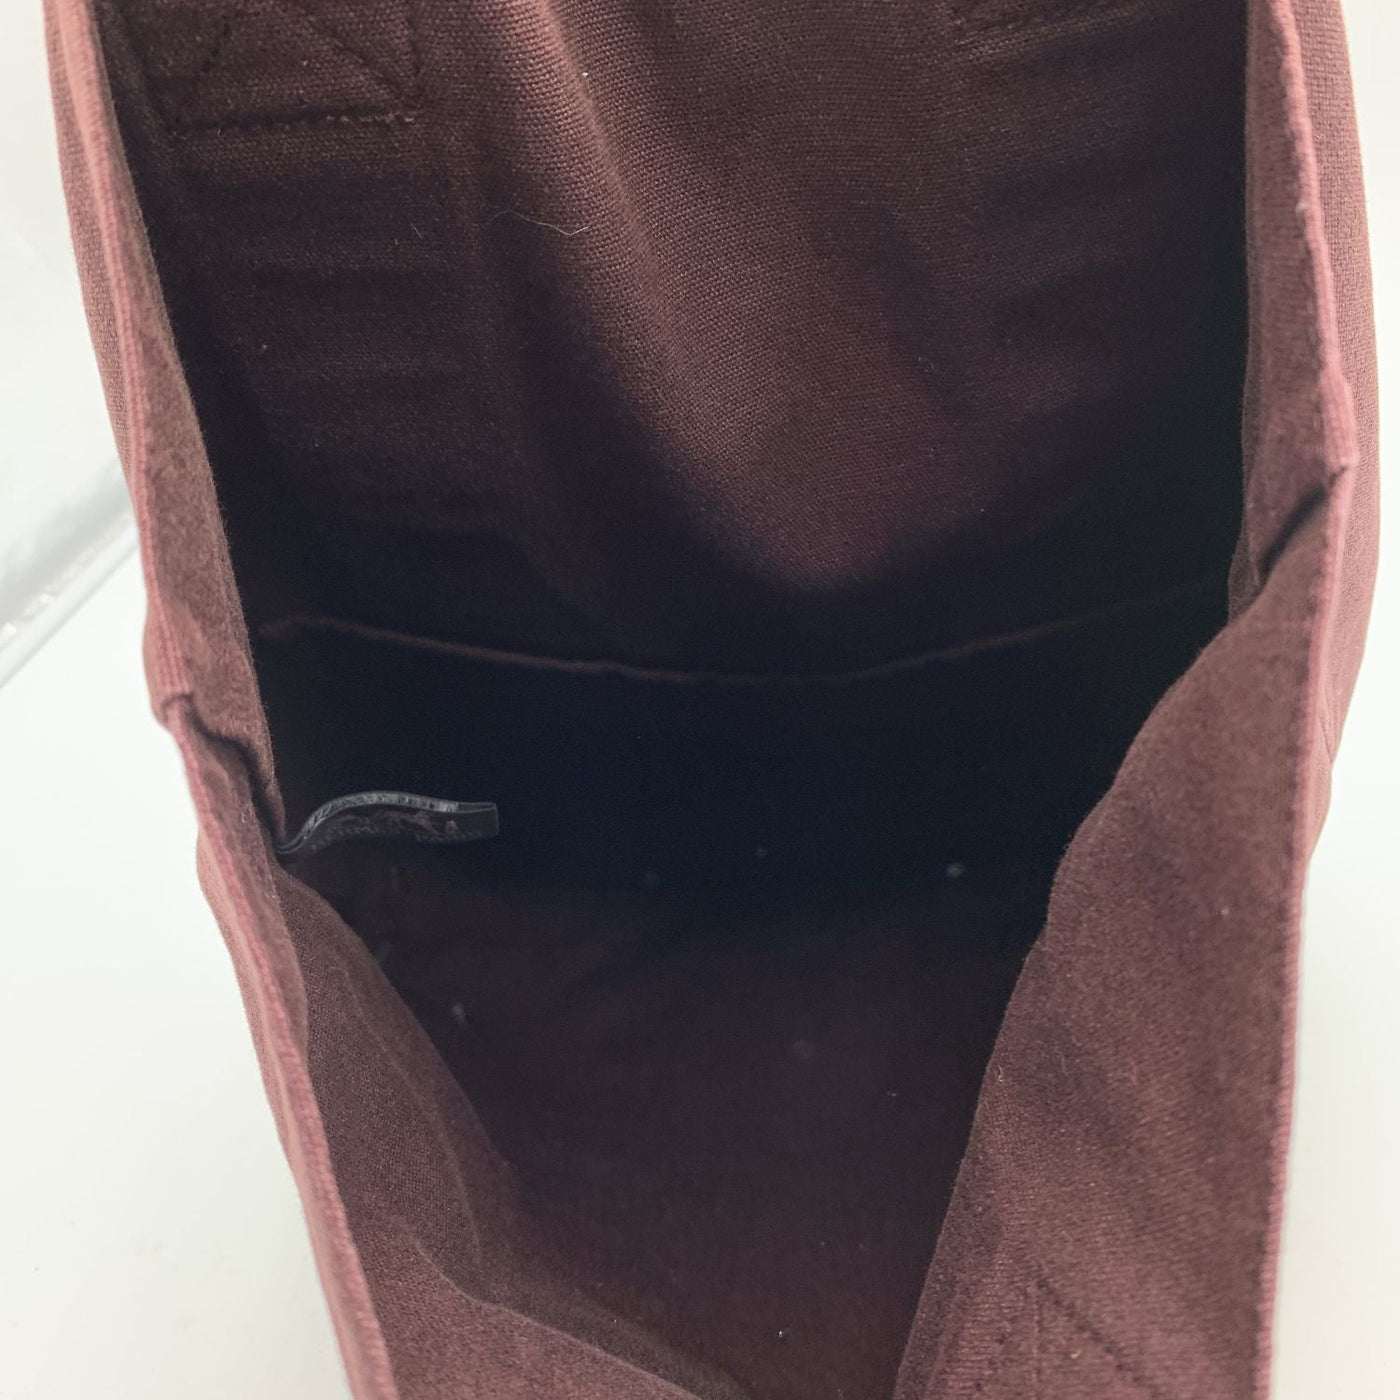 Louis Vuitton Red Magenta Cabas MM Antigua Tote Bag M40034 Handbag – OPA  Vintage